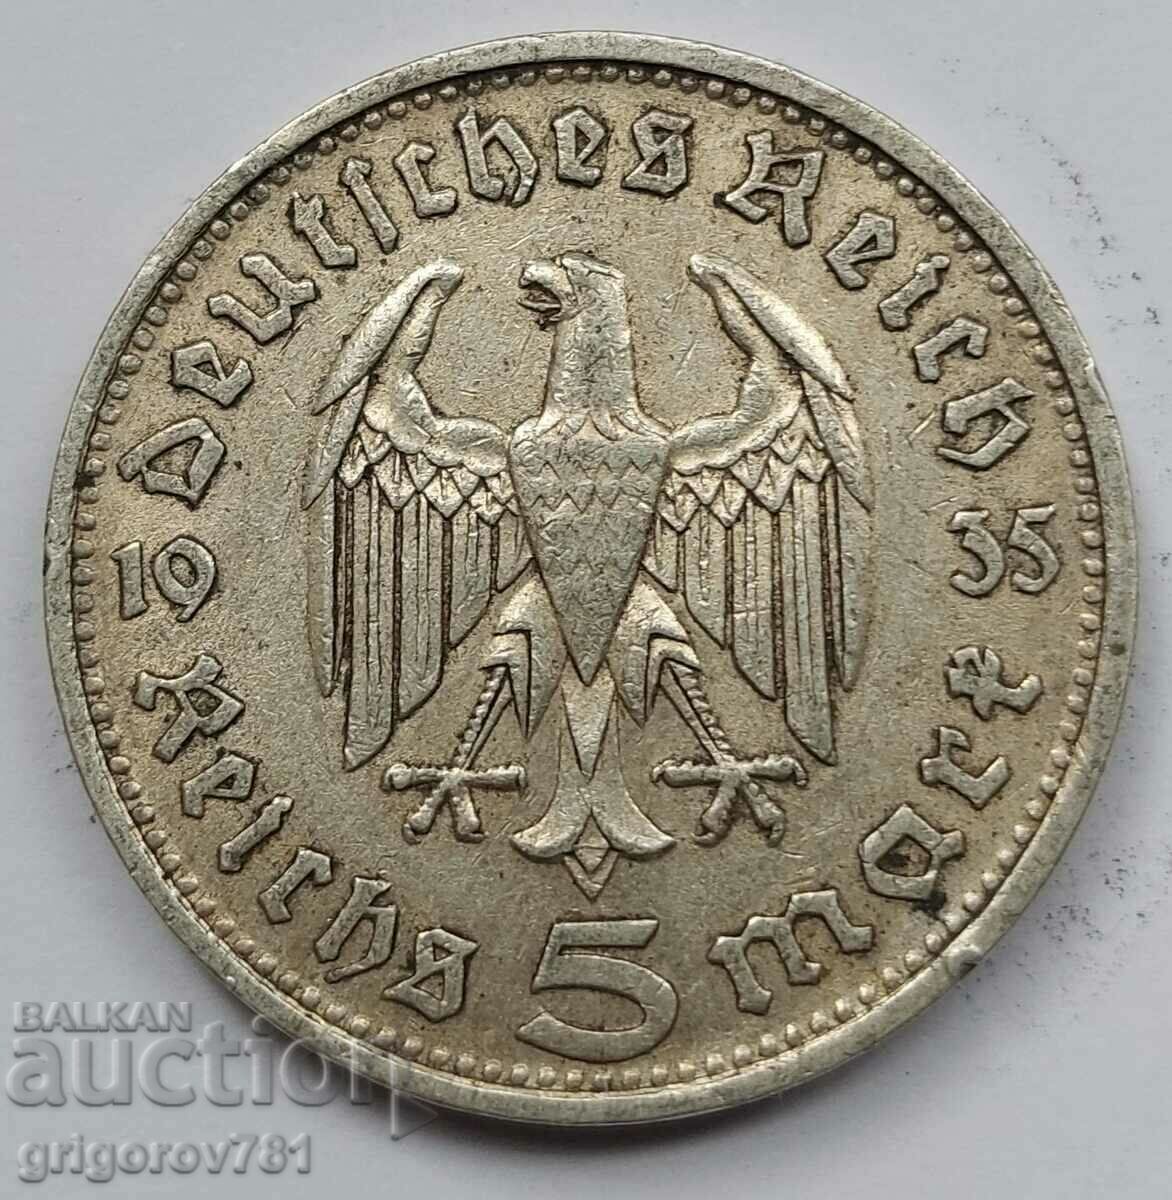 5 марки сребро Германия 1935 D III Райх  сребърна монета №66